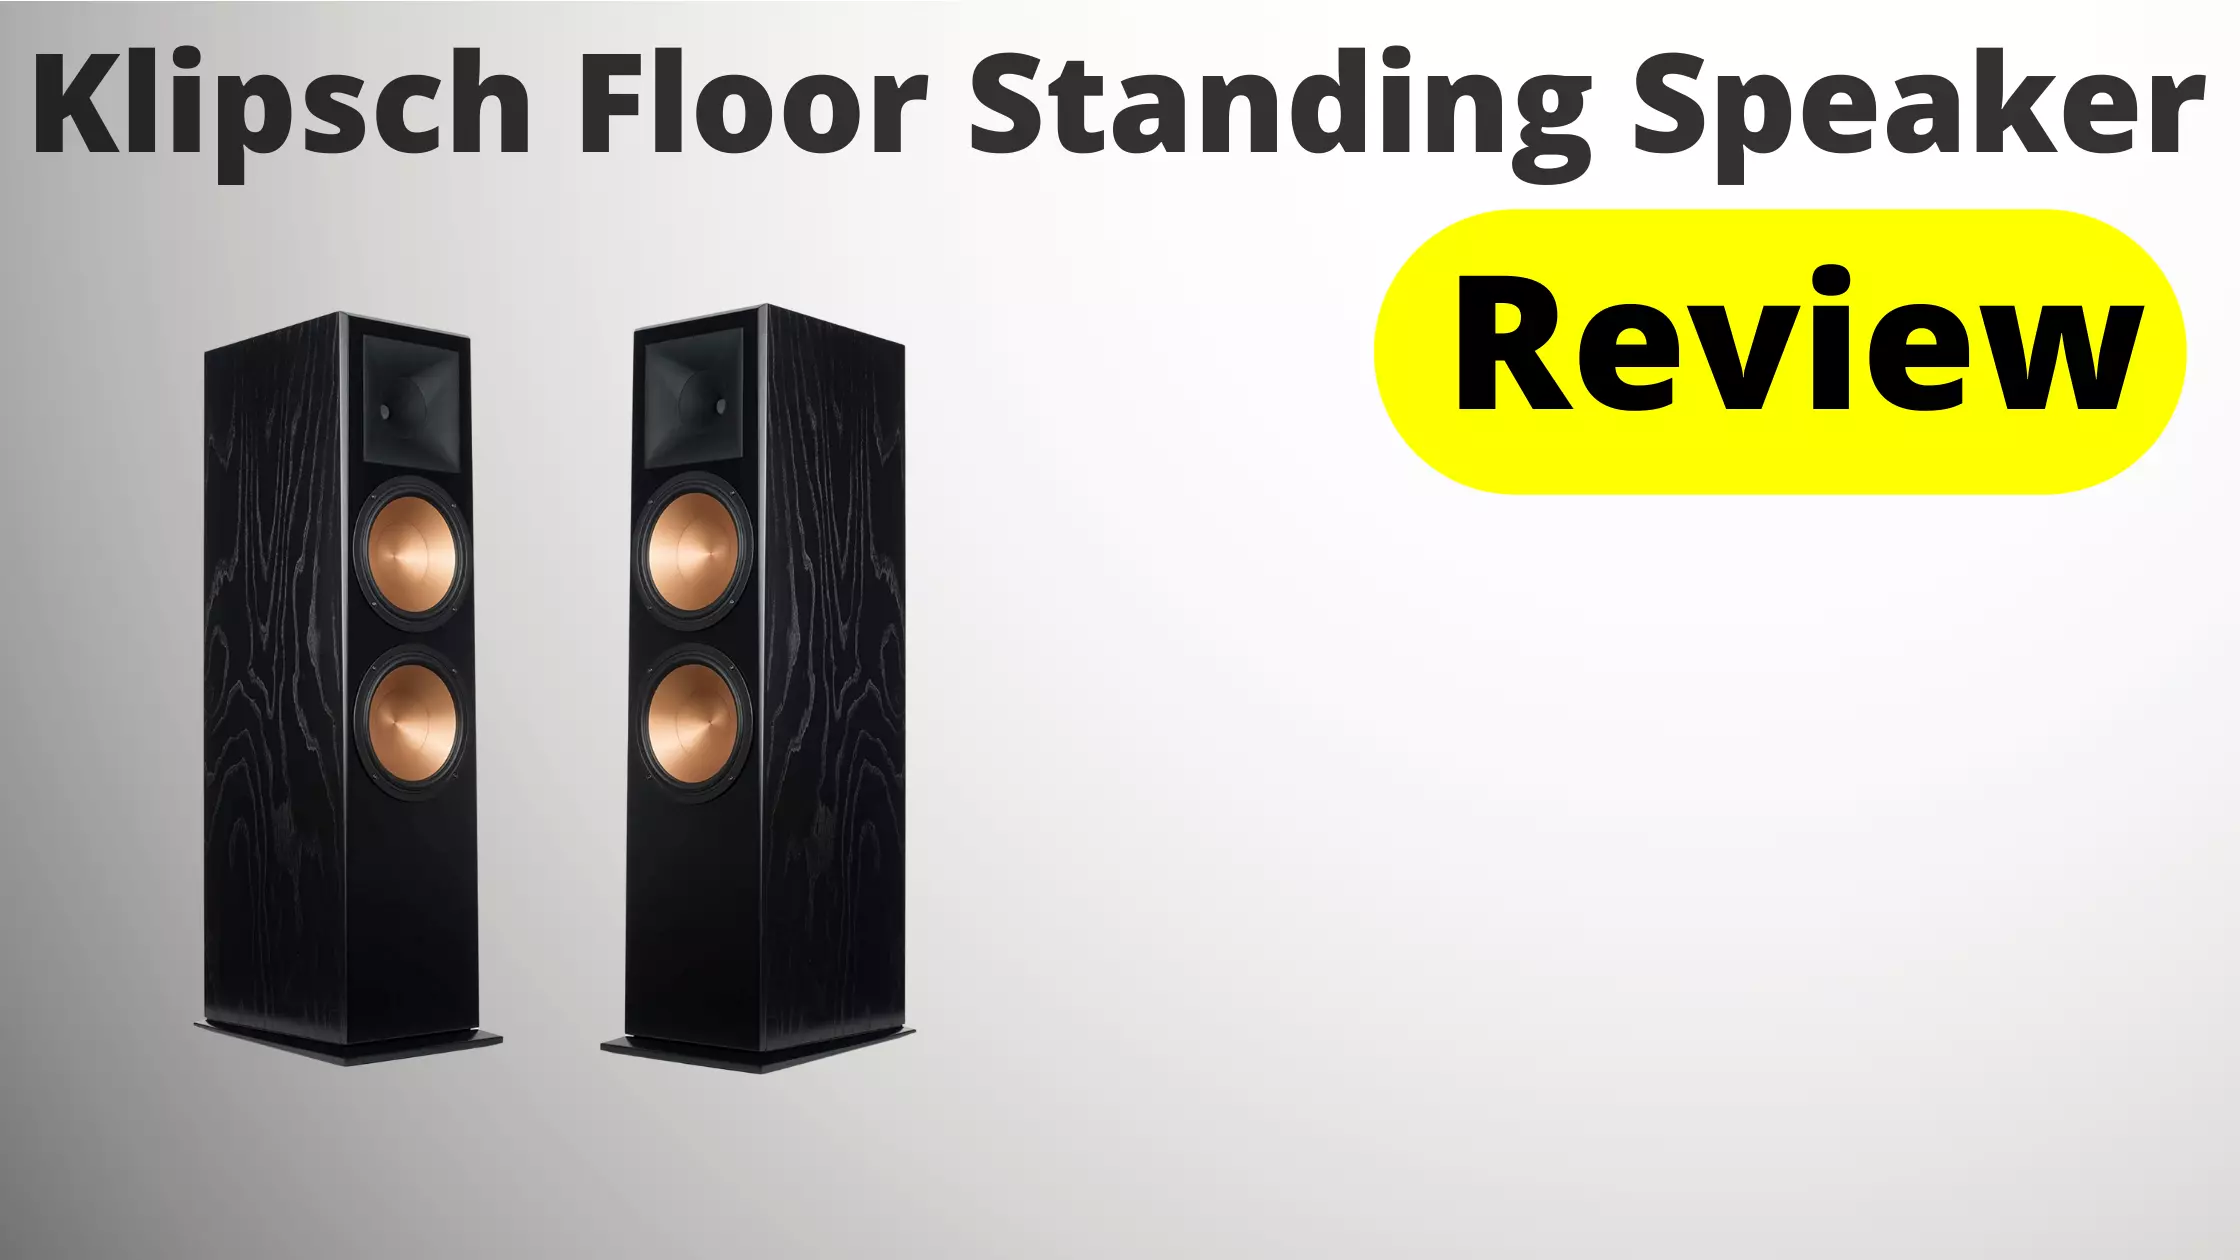 Klipsch Floor Standing Speaker Review - Expert's Guide